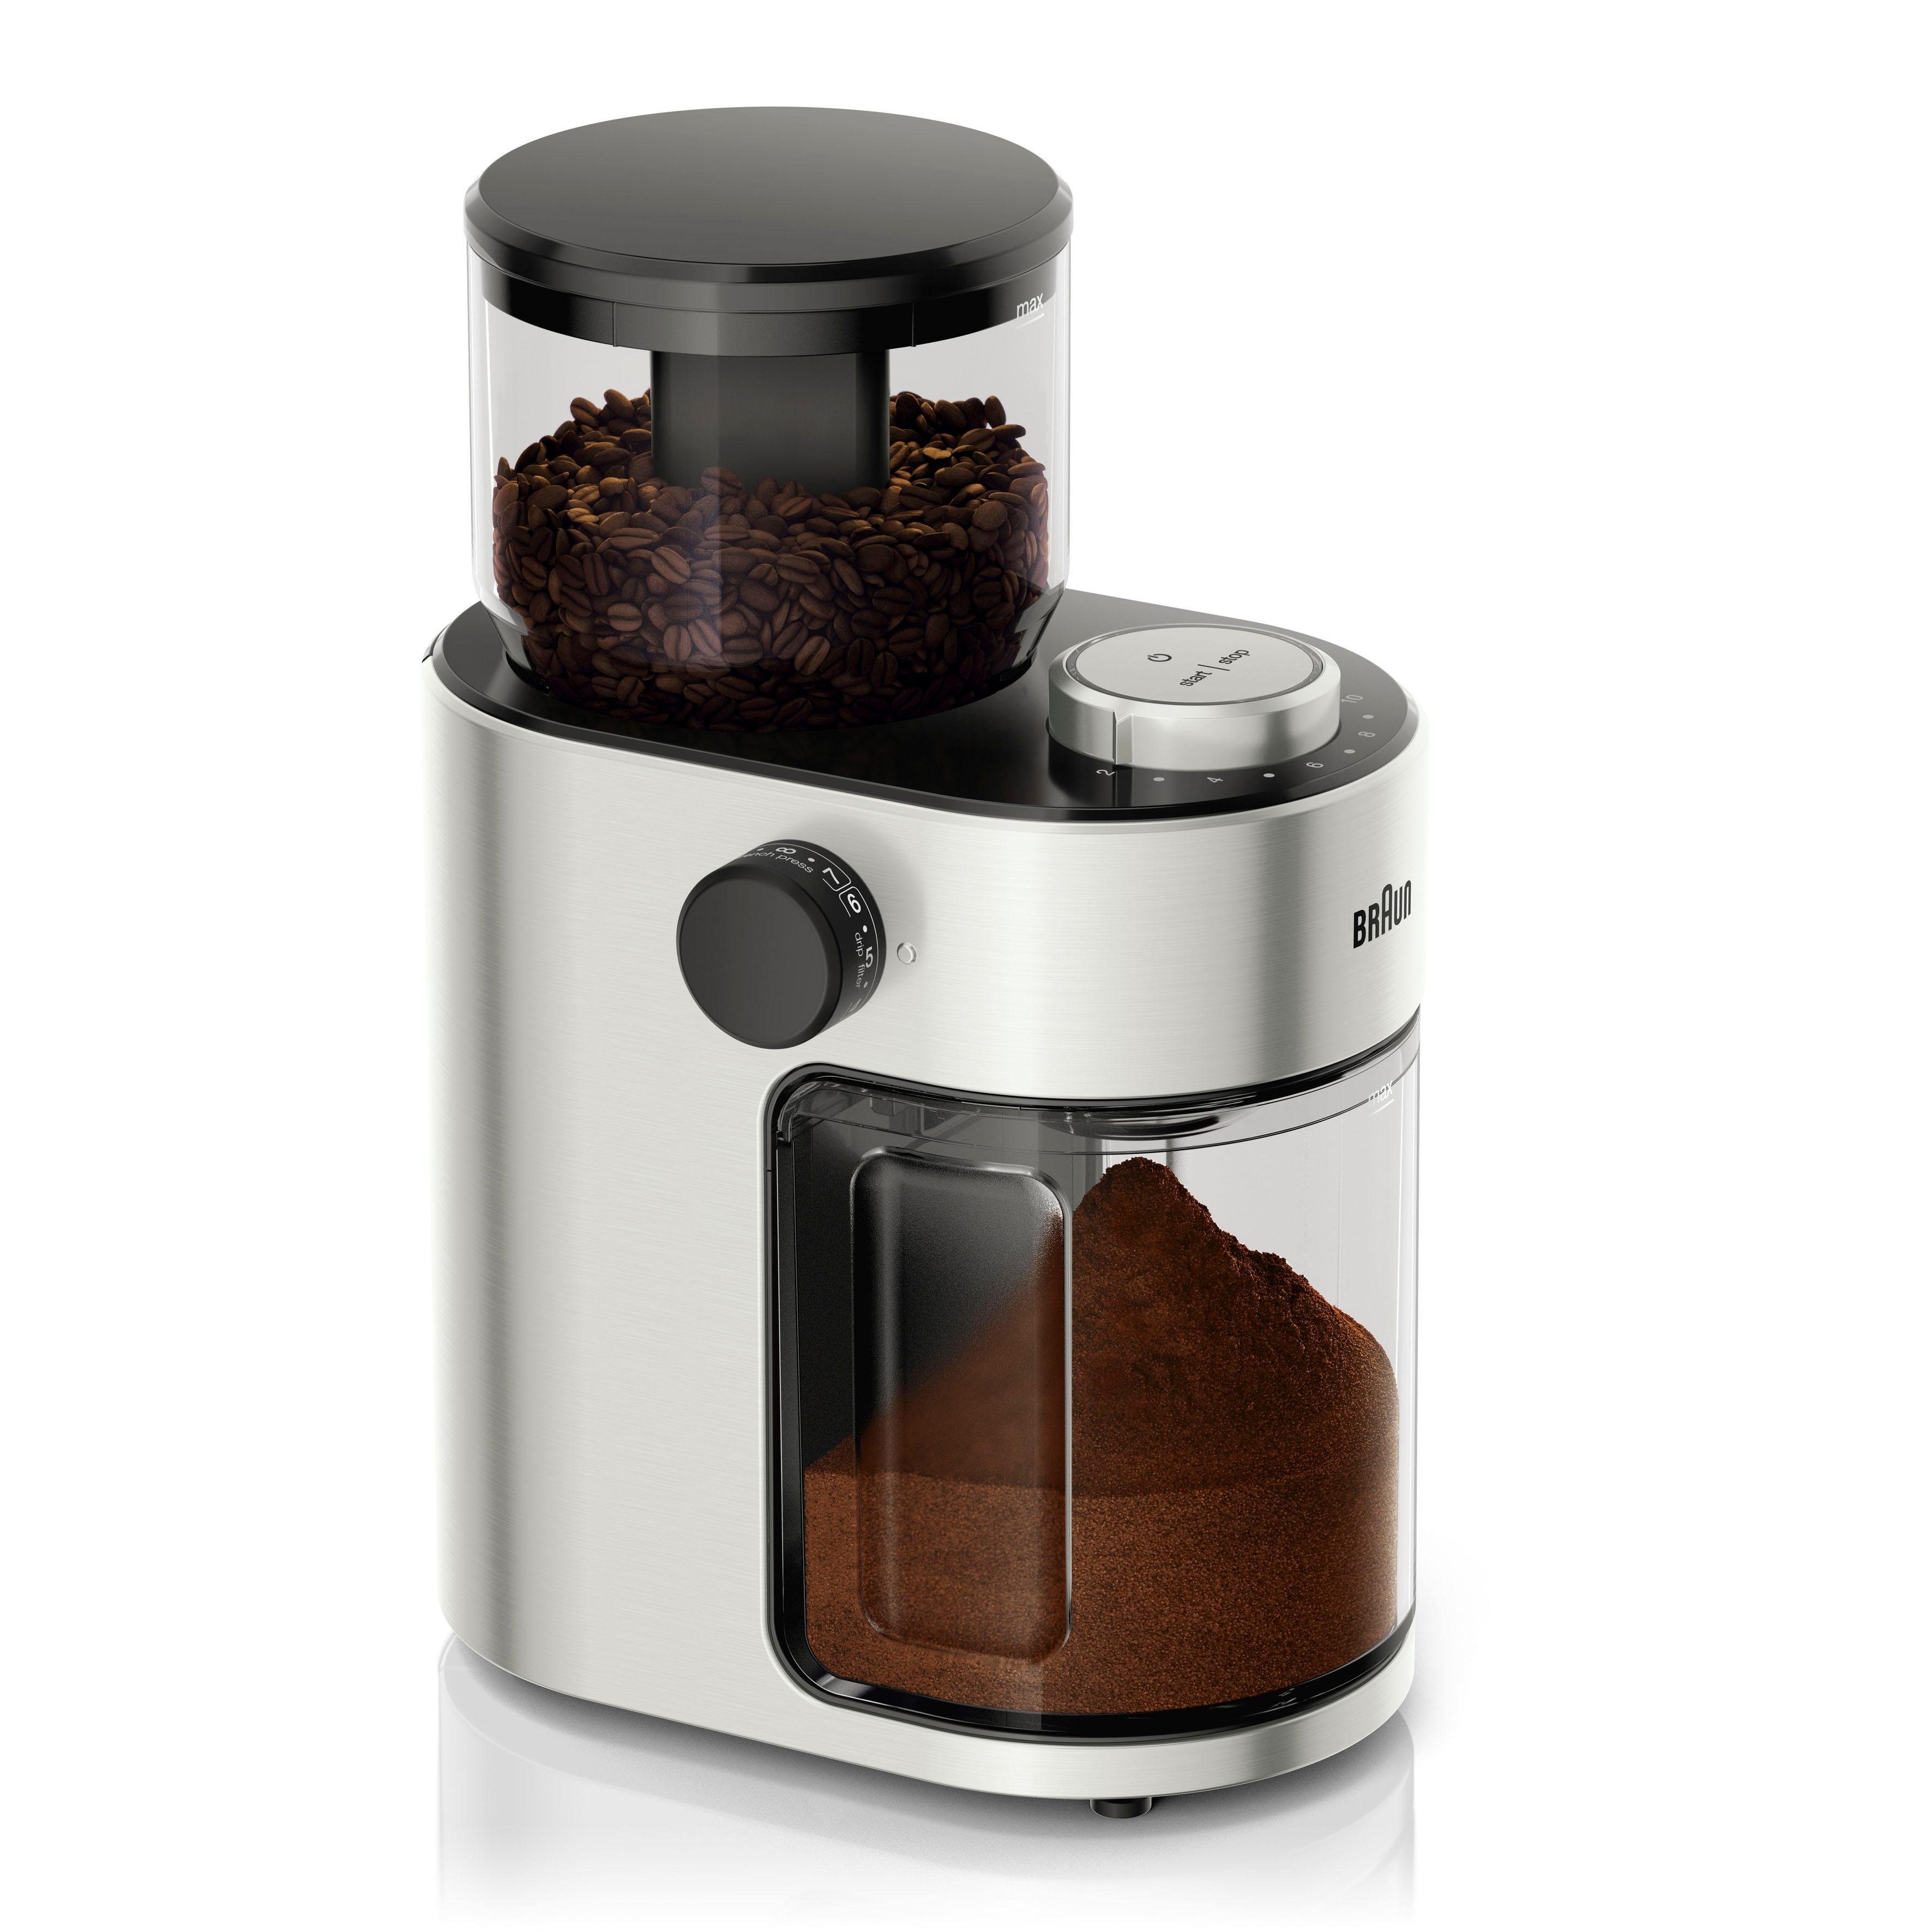 Braun Kaffeemühle Kaffeemühle FreshSet KG7070, 110 W, Scheibenmahlwerk, 220  g Bohnenbehälter, mit Überhitzungsschutz